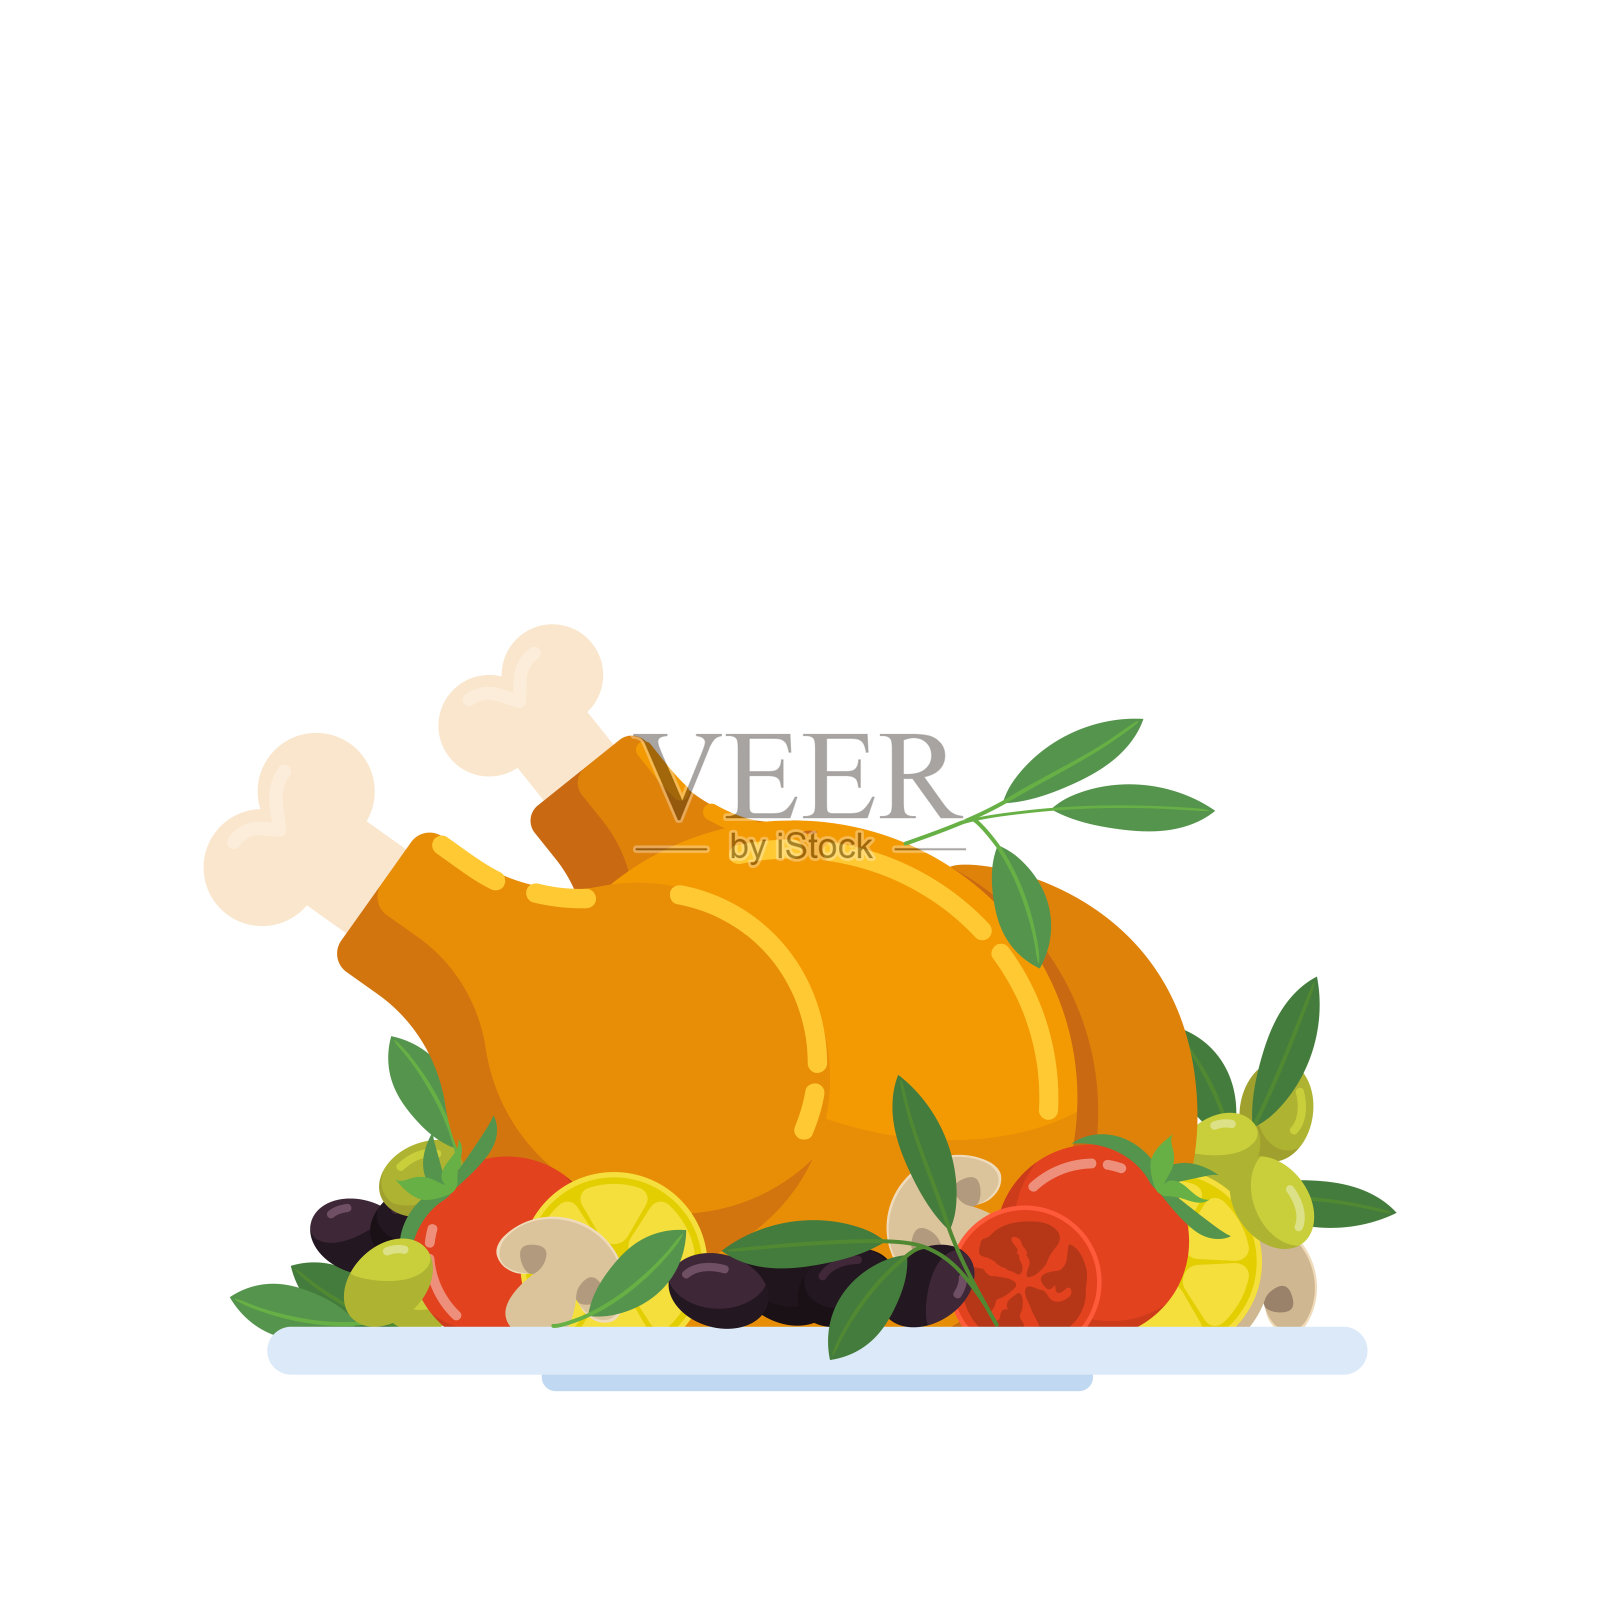 用蔬菜、橄榄和香料装饰的节日烤火鸡/鸡肉。设计元素图片